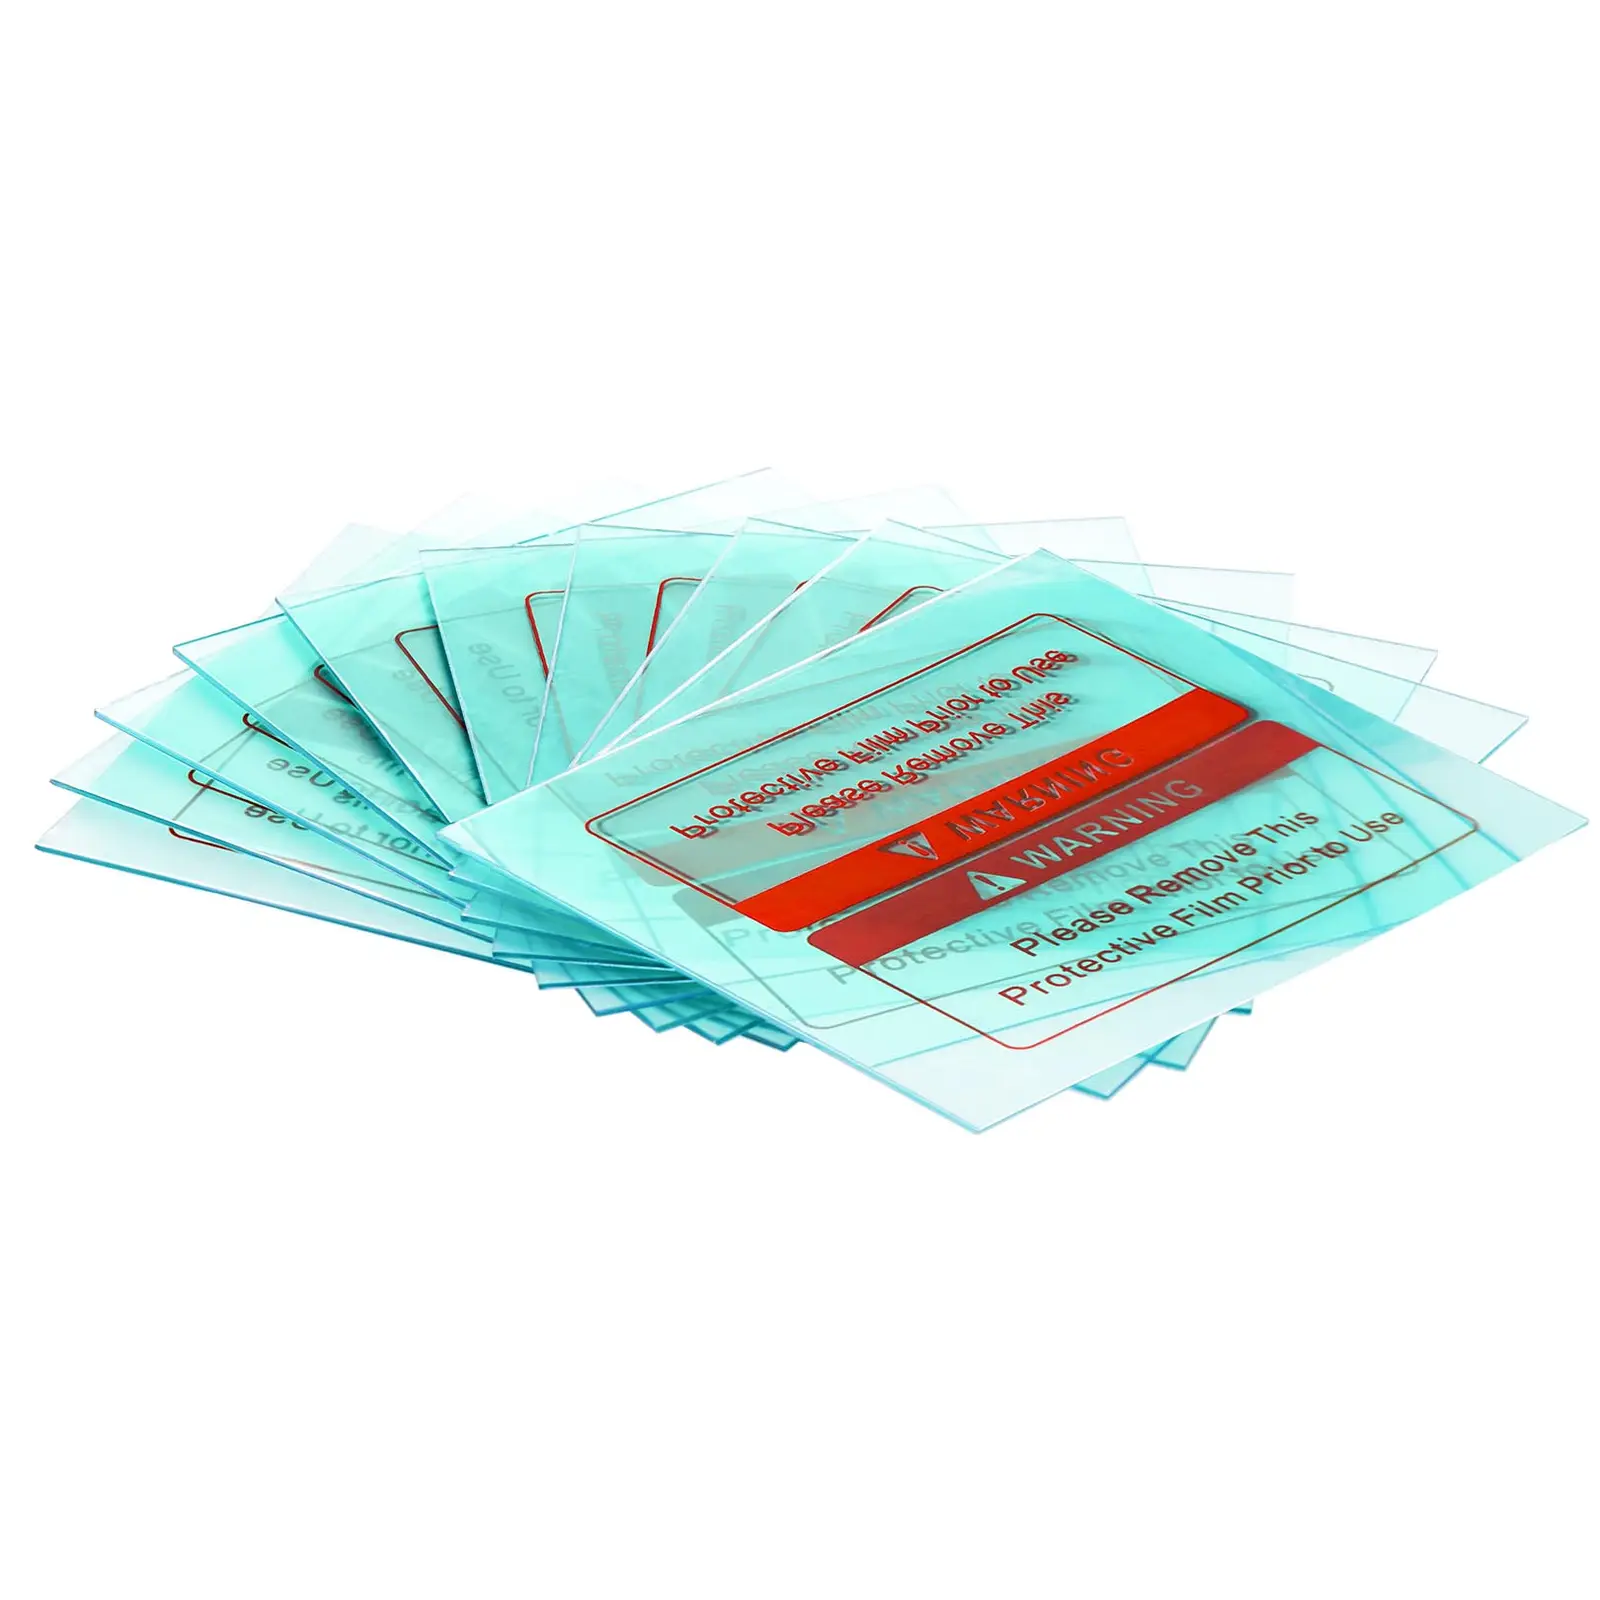 10 filtros sobresselentes externos - Capacete de solda “Constructor”